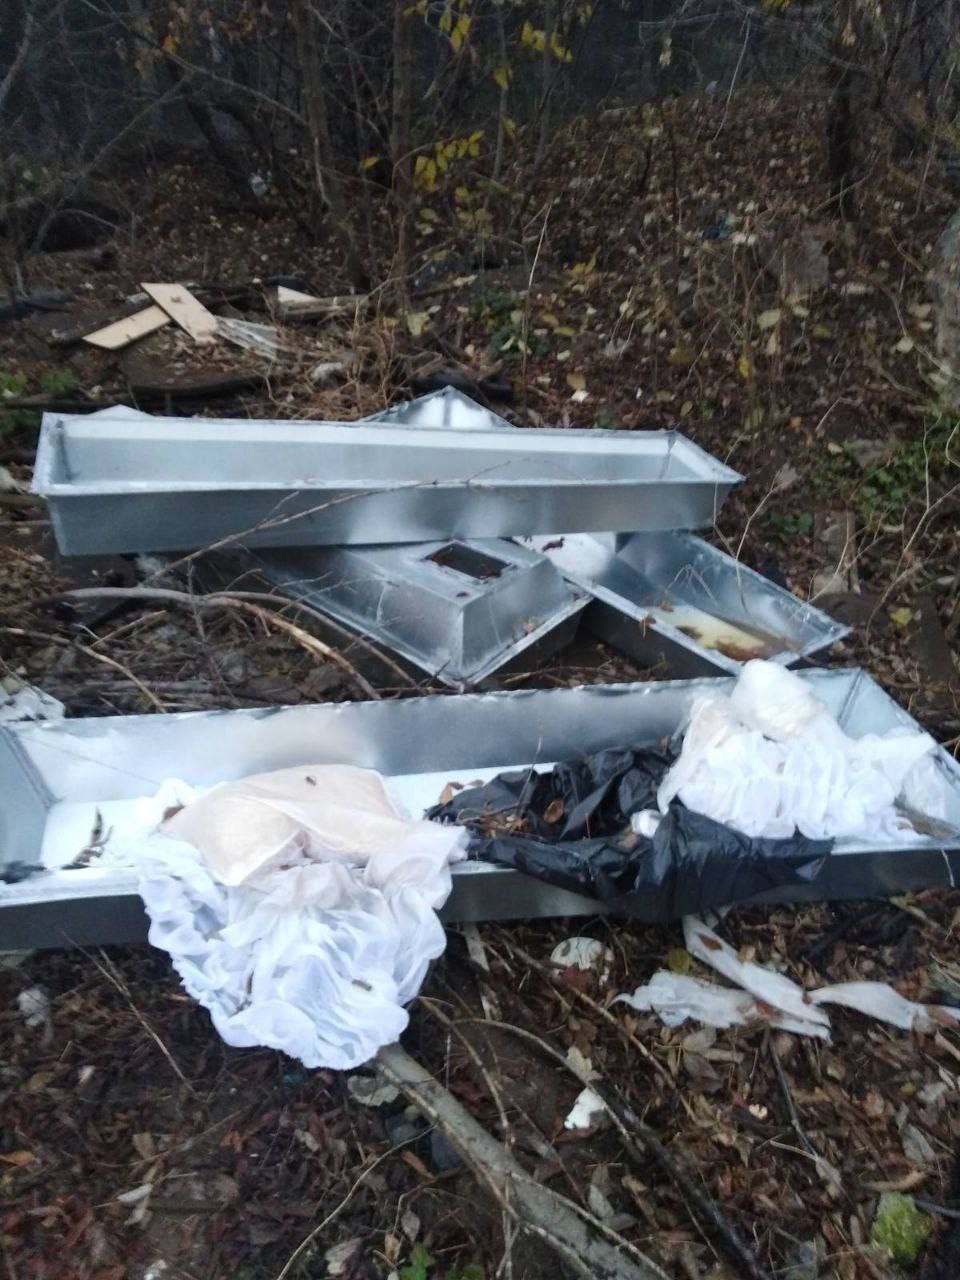 Белгородцы обратились в полицию из-за цинковых гробов на мусорке